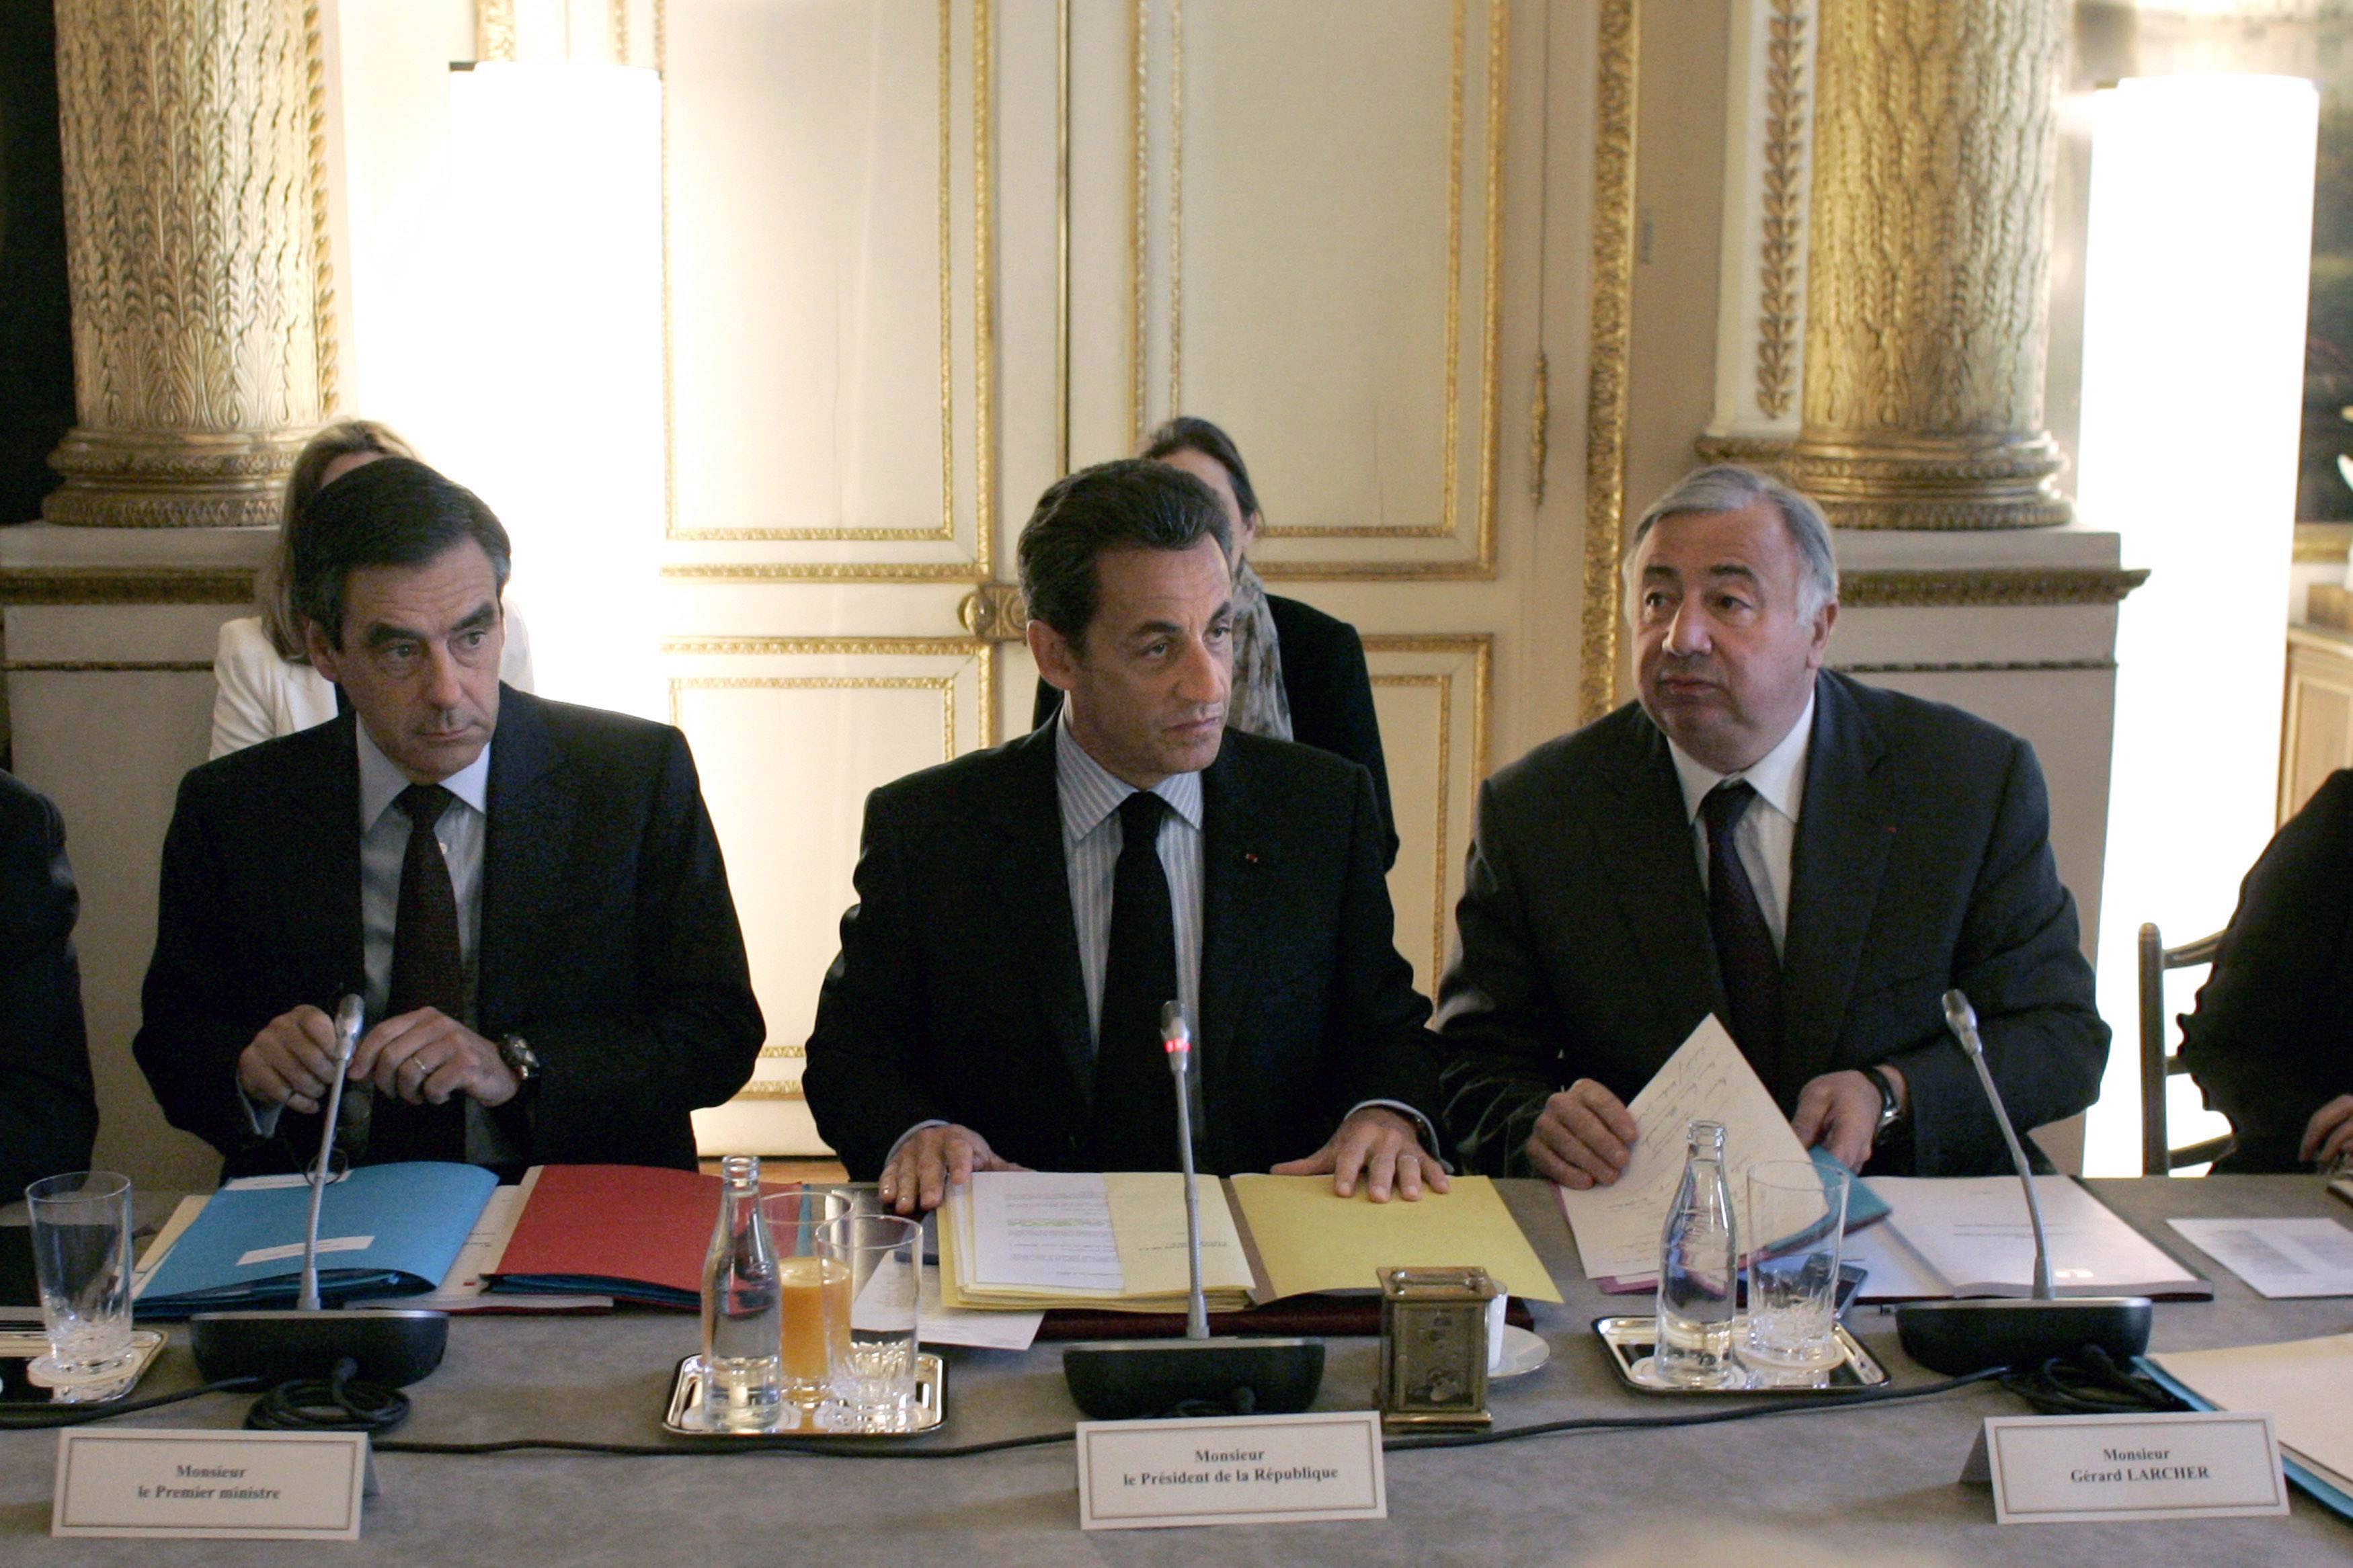 Μείωση δημοσίων δαπανών κατα 45 δισ. ανακοίνωσε η Γαλλία